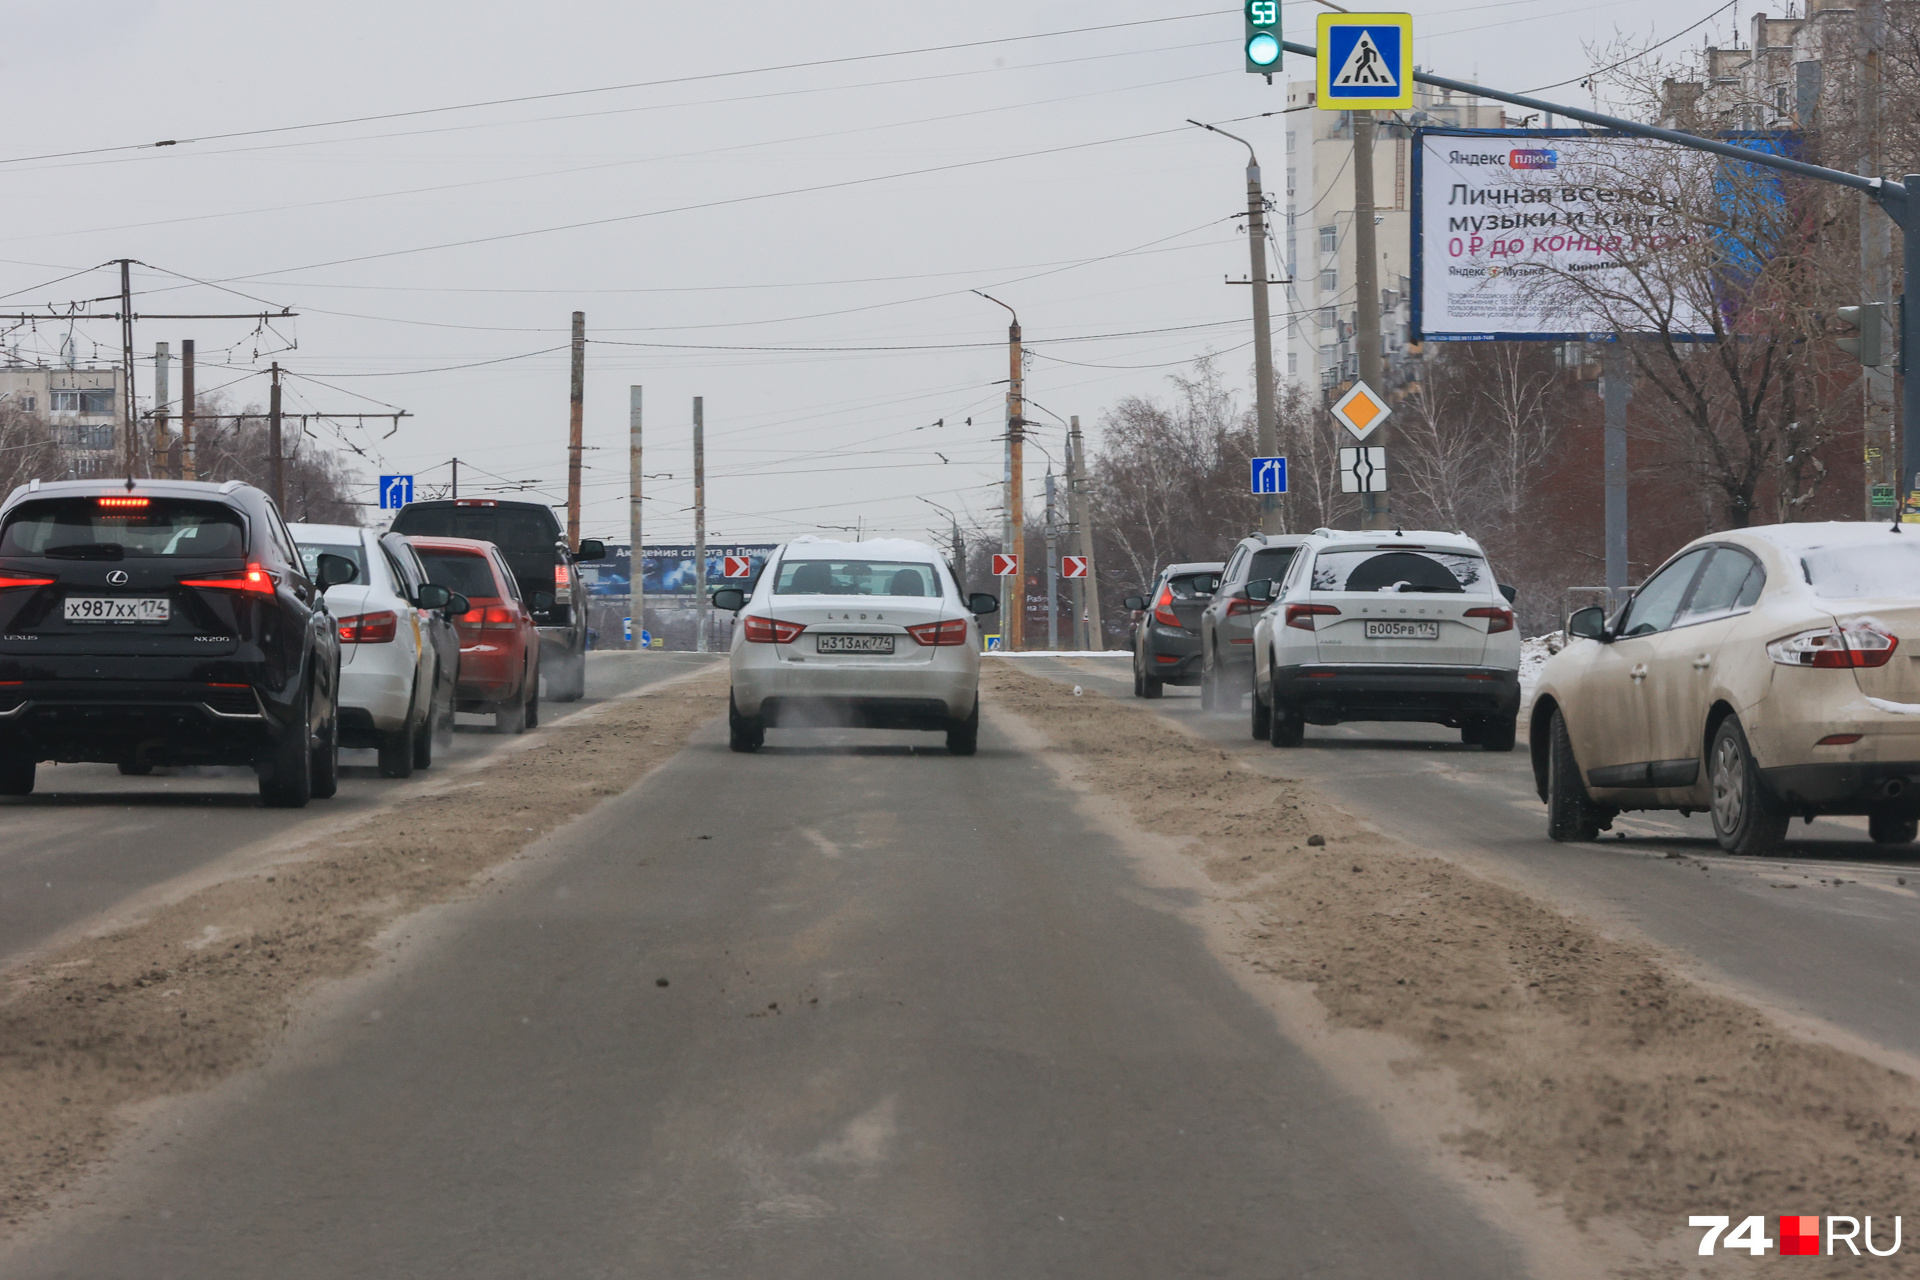 Подрядчиков критикуют, штрафуют за снег на дорогах, но пока проблему плохой уборки дорог не могут решить